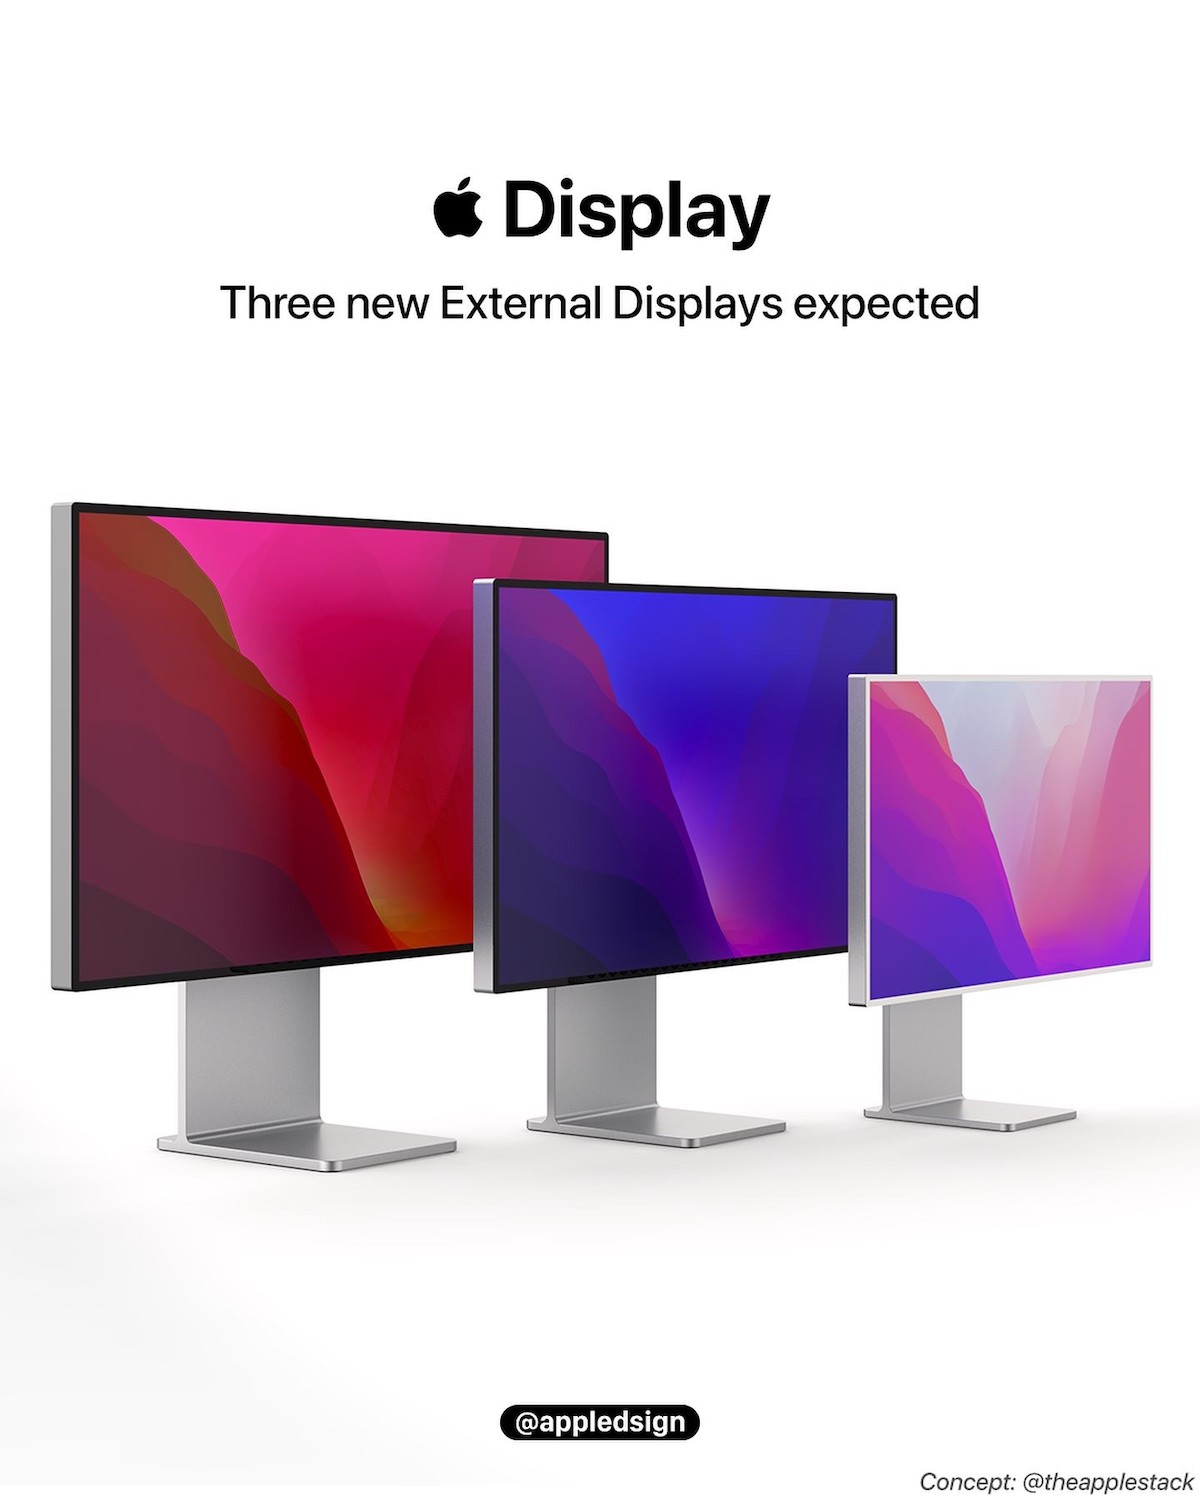 Apple Display AD 0422